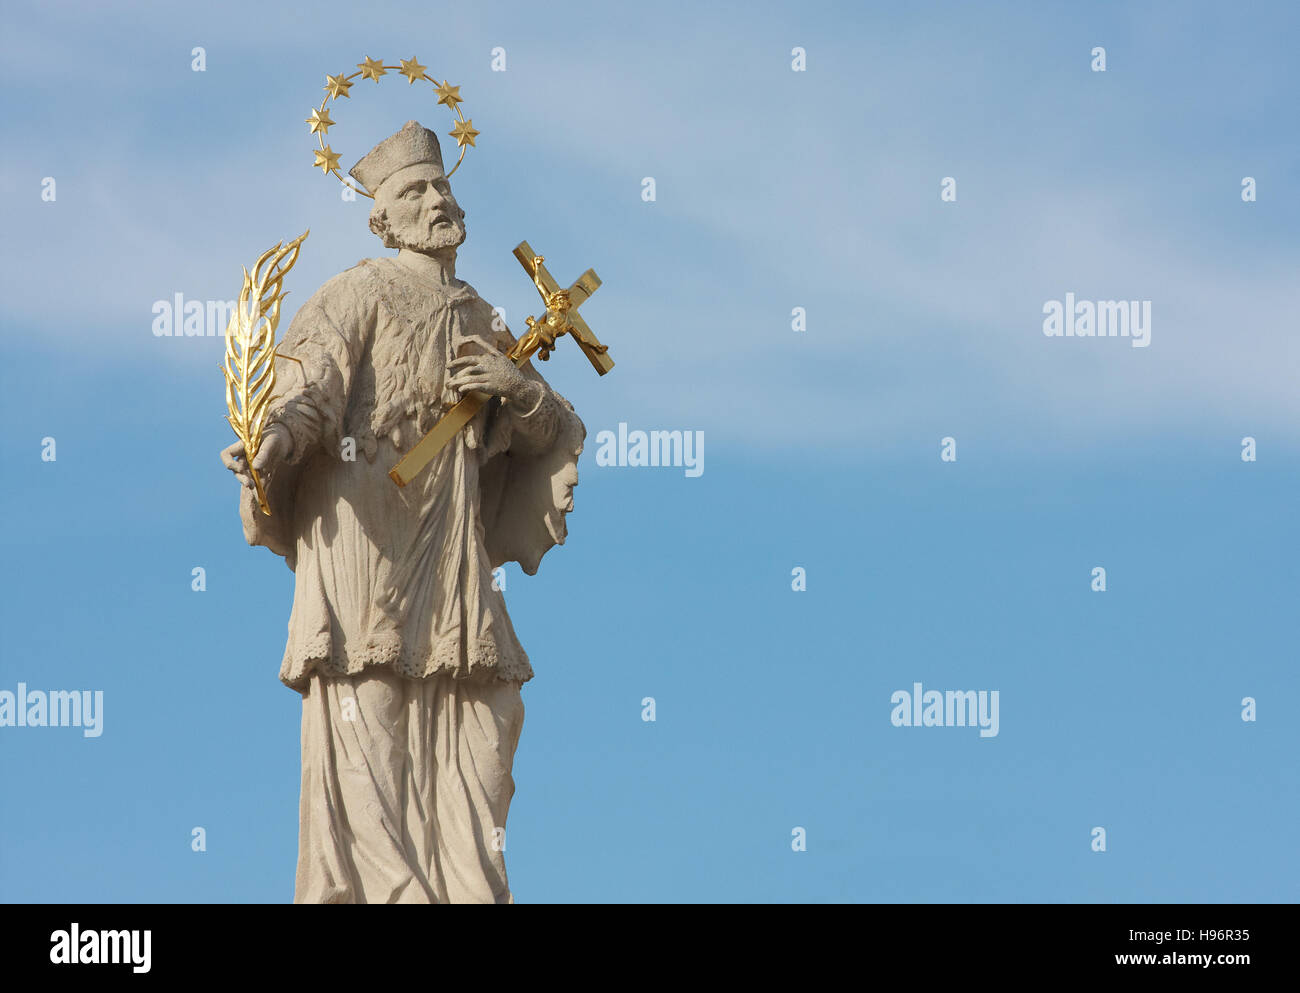 Statue of St. Nepomuk, Scheibbs, Mostviertel Region, Lower Austria, Austria Stock Photo